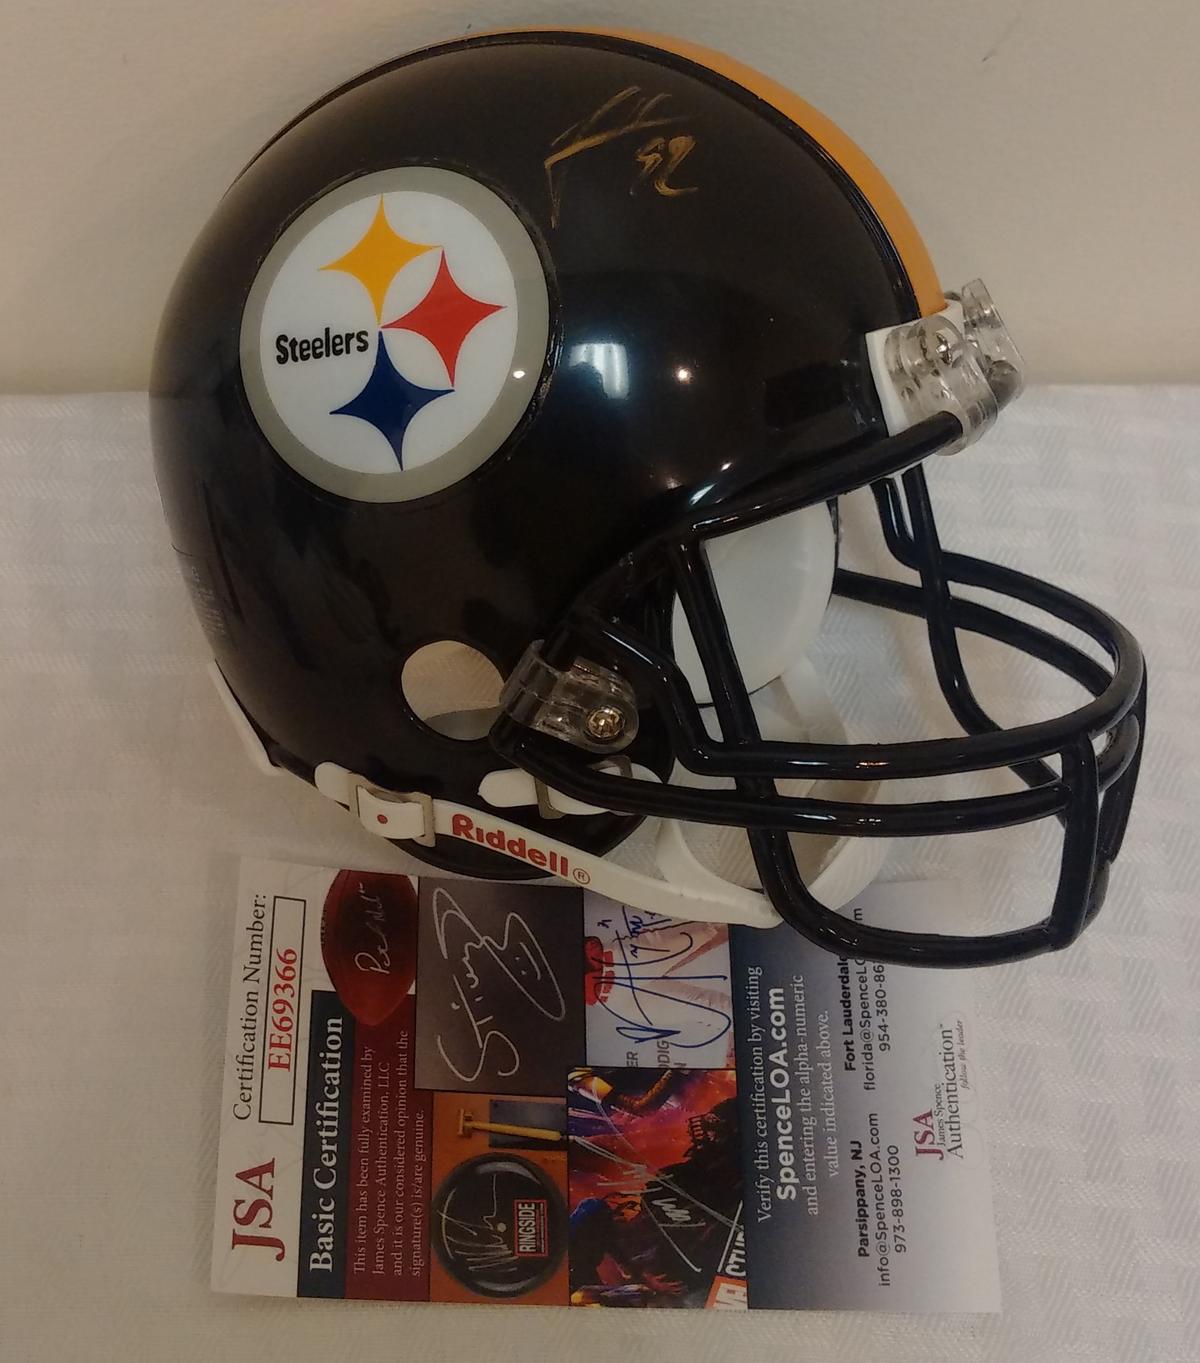 Steelers James Harrison Mini Football Helmet Autographed Signed NFL JSA COA